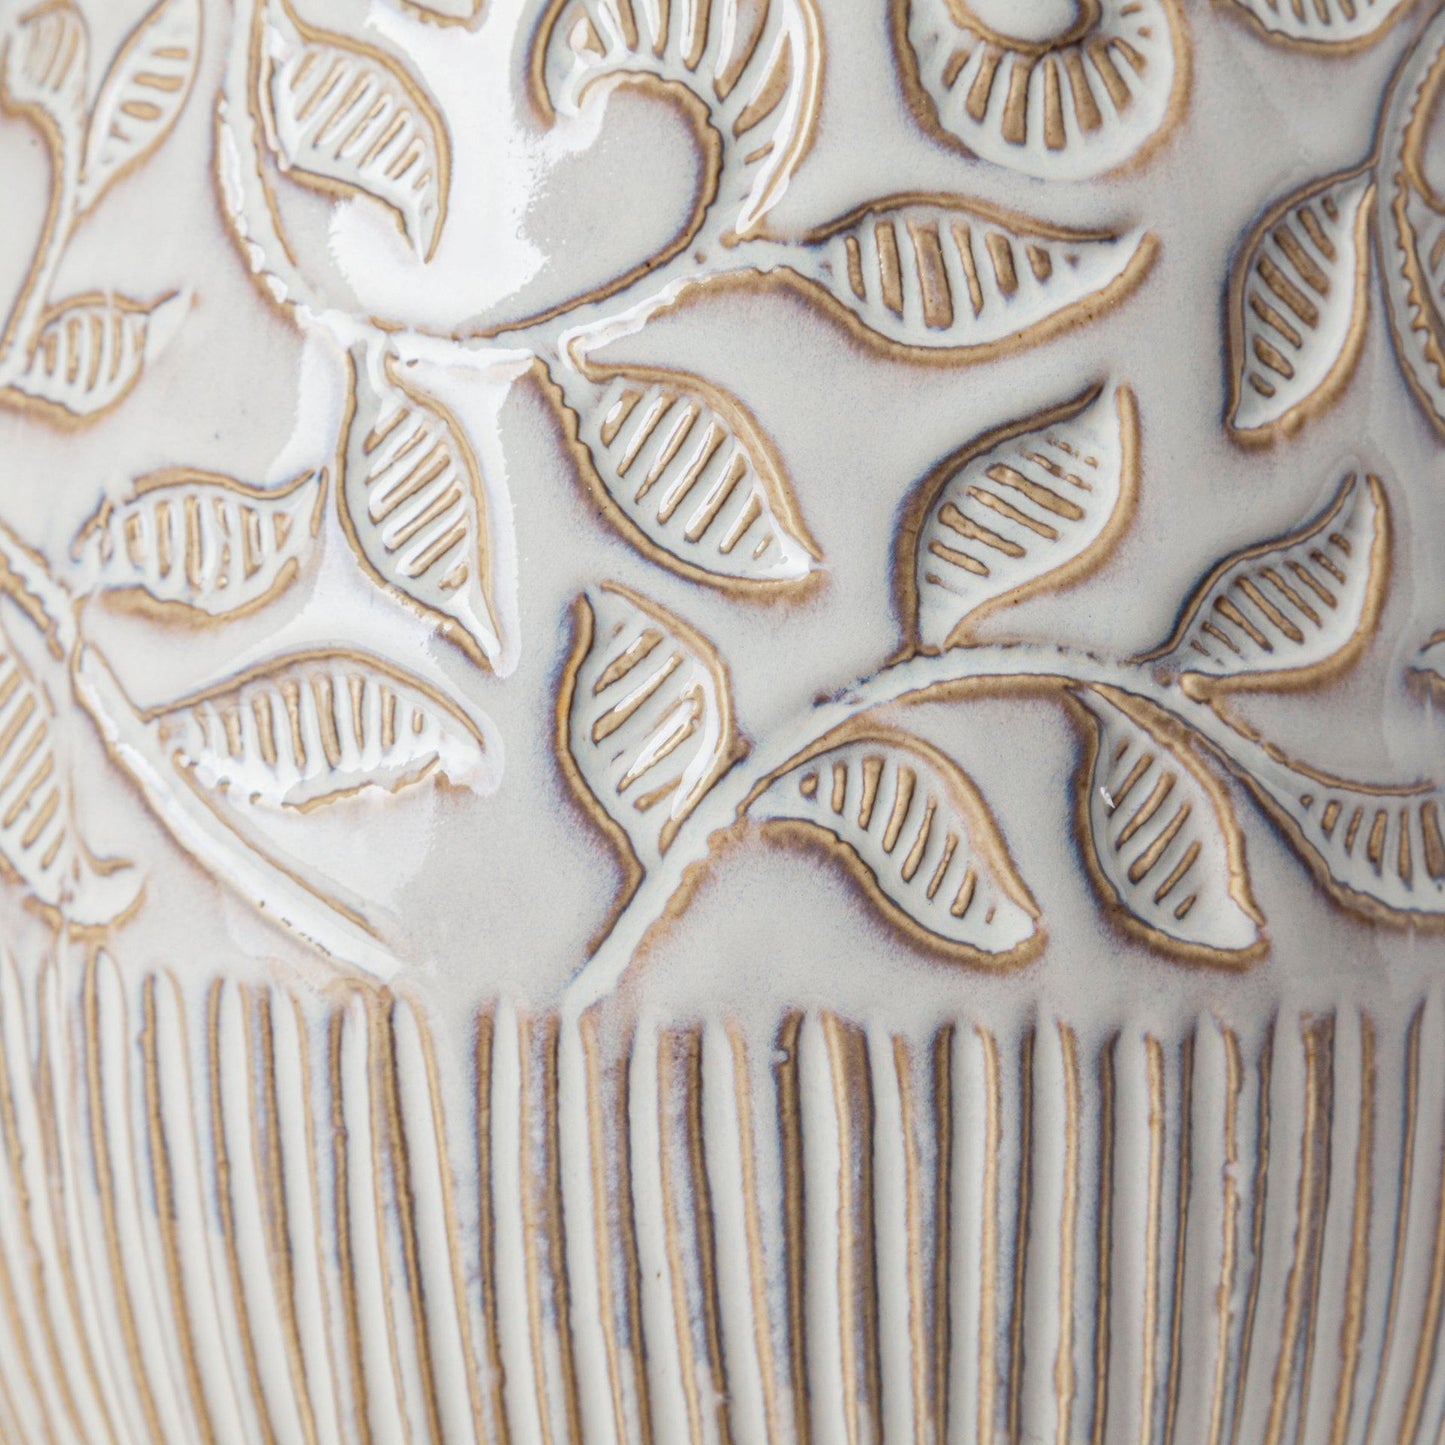 Jadiza III Large White Glaze Floral Patterned Ceramic Vase